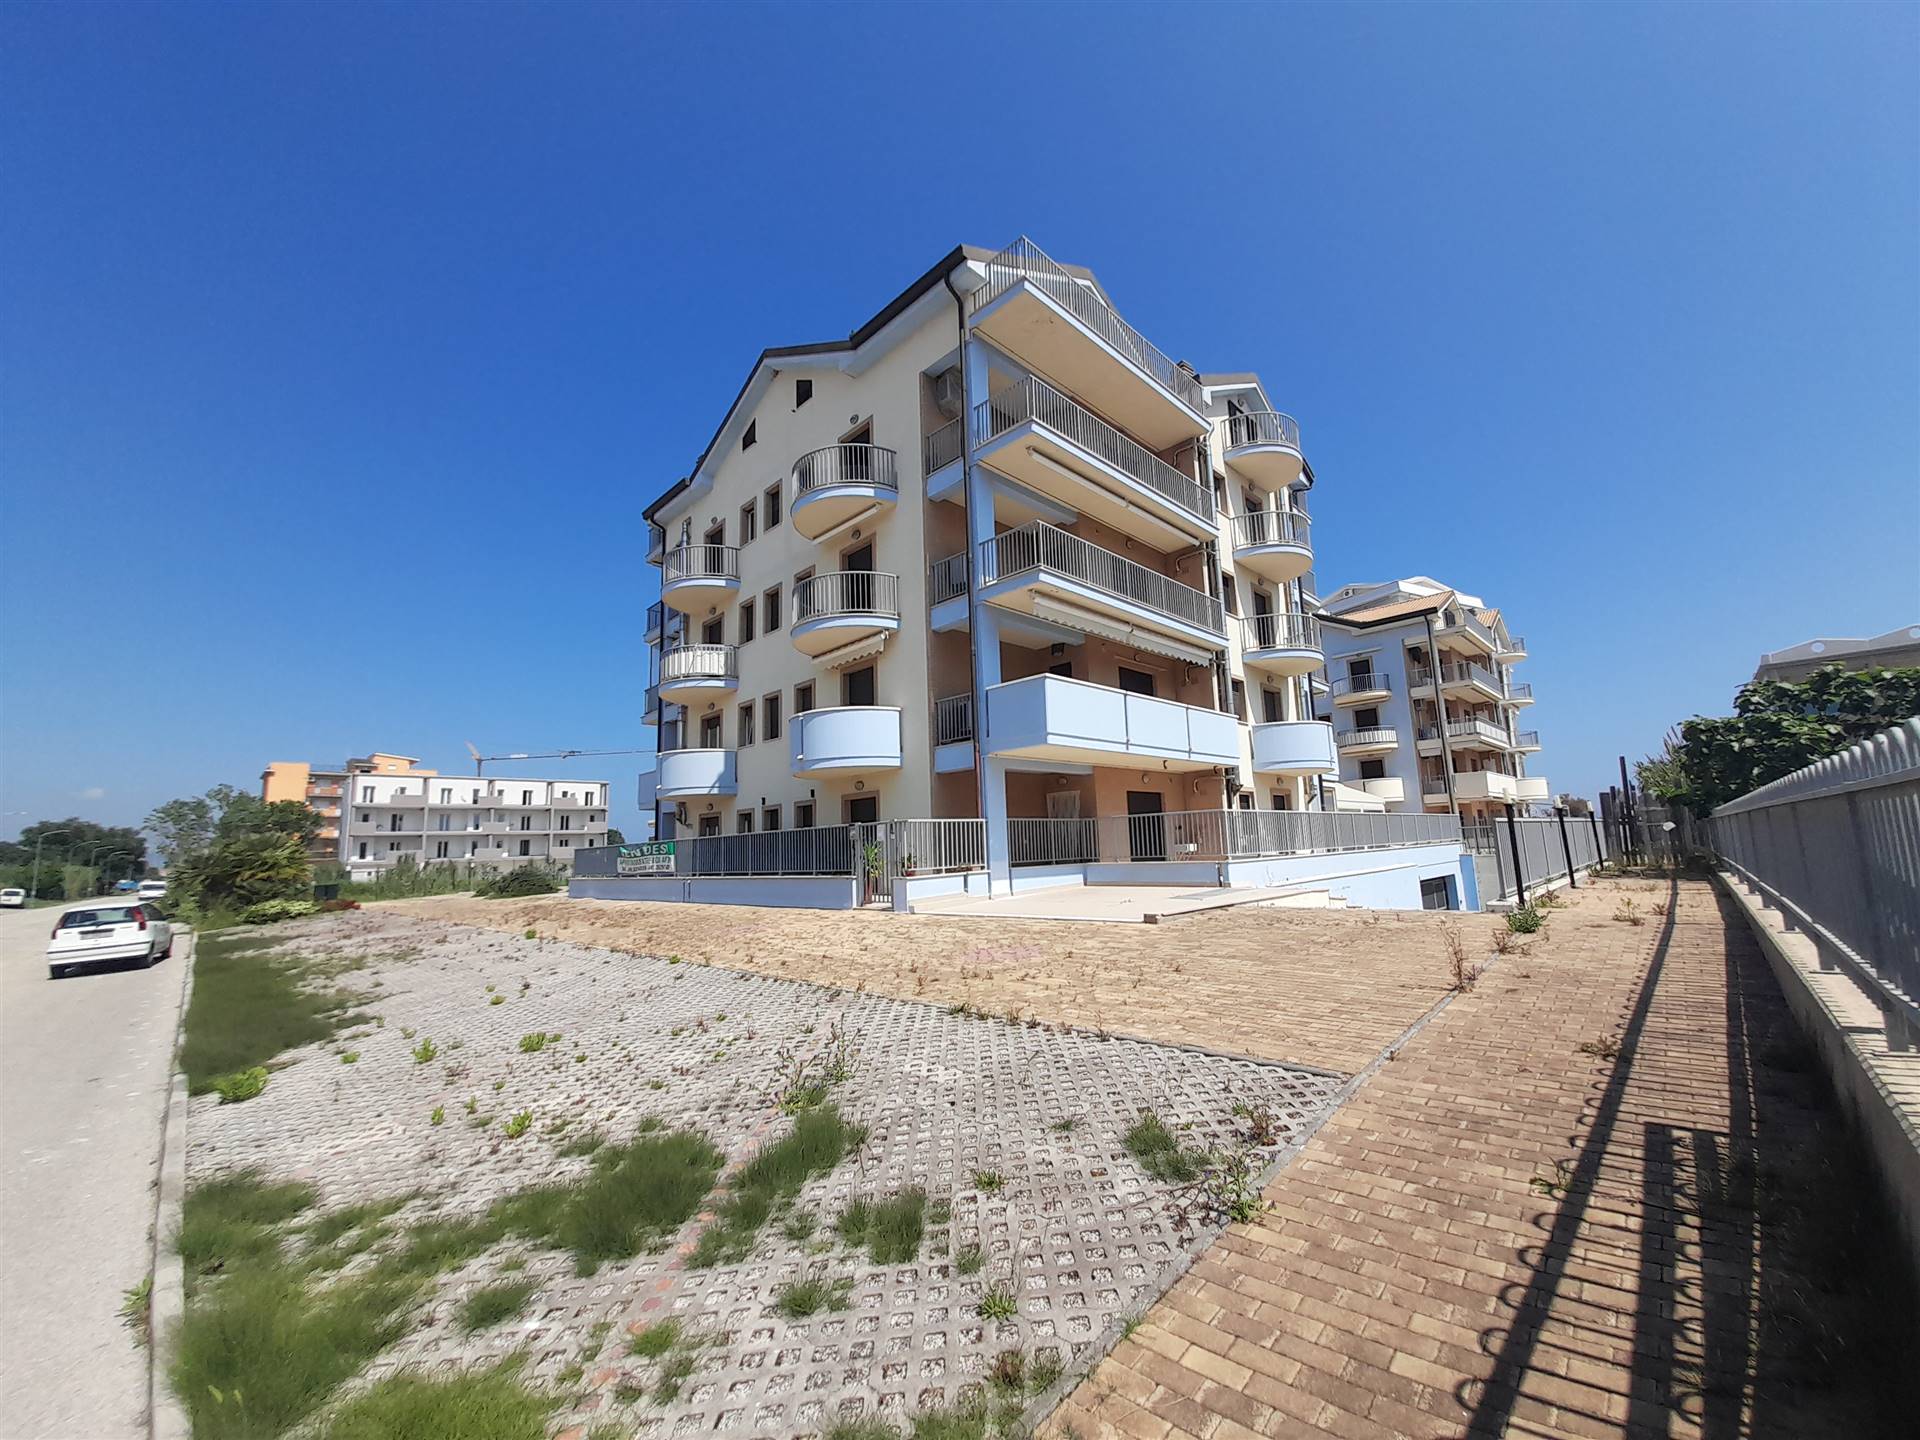 V - 210 L'agenzia immobiliare Aliservice propone in vendita a San Salvo marina, all'interno di un bellissimo residence di nuova costruzione, n° 02 